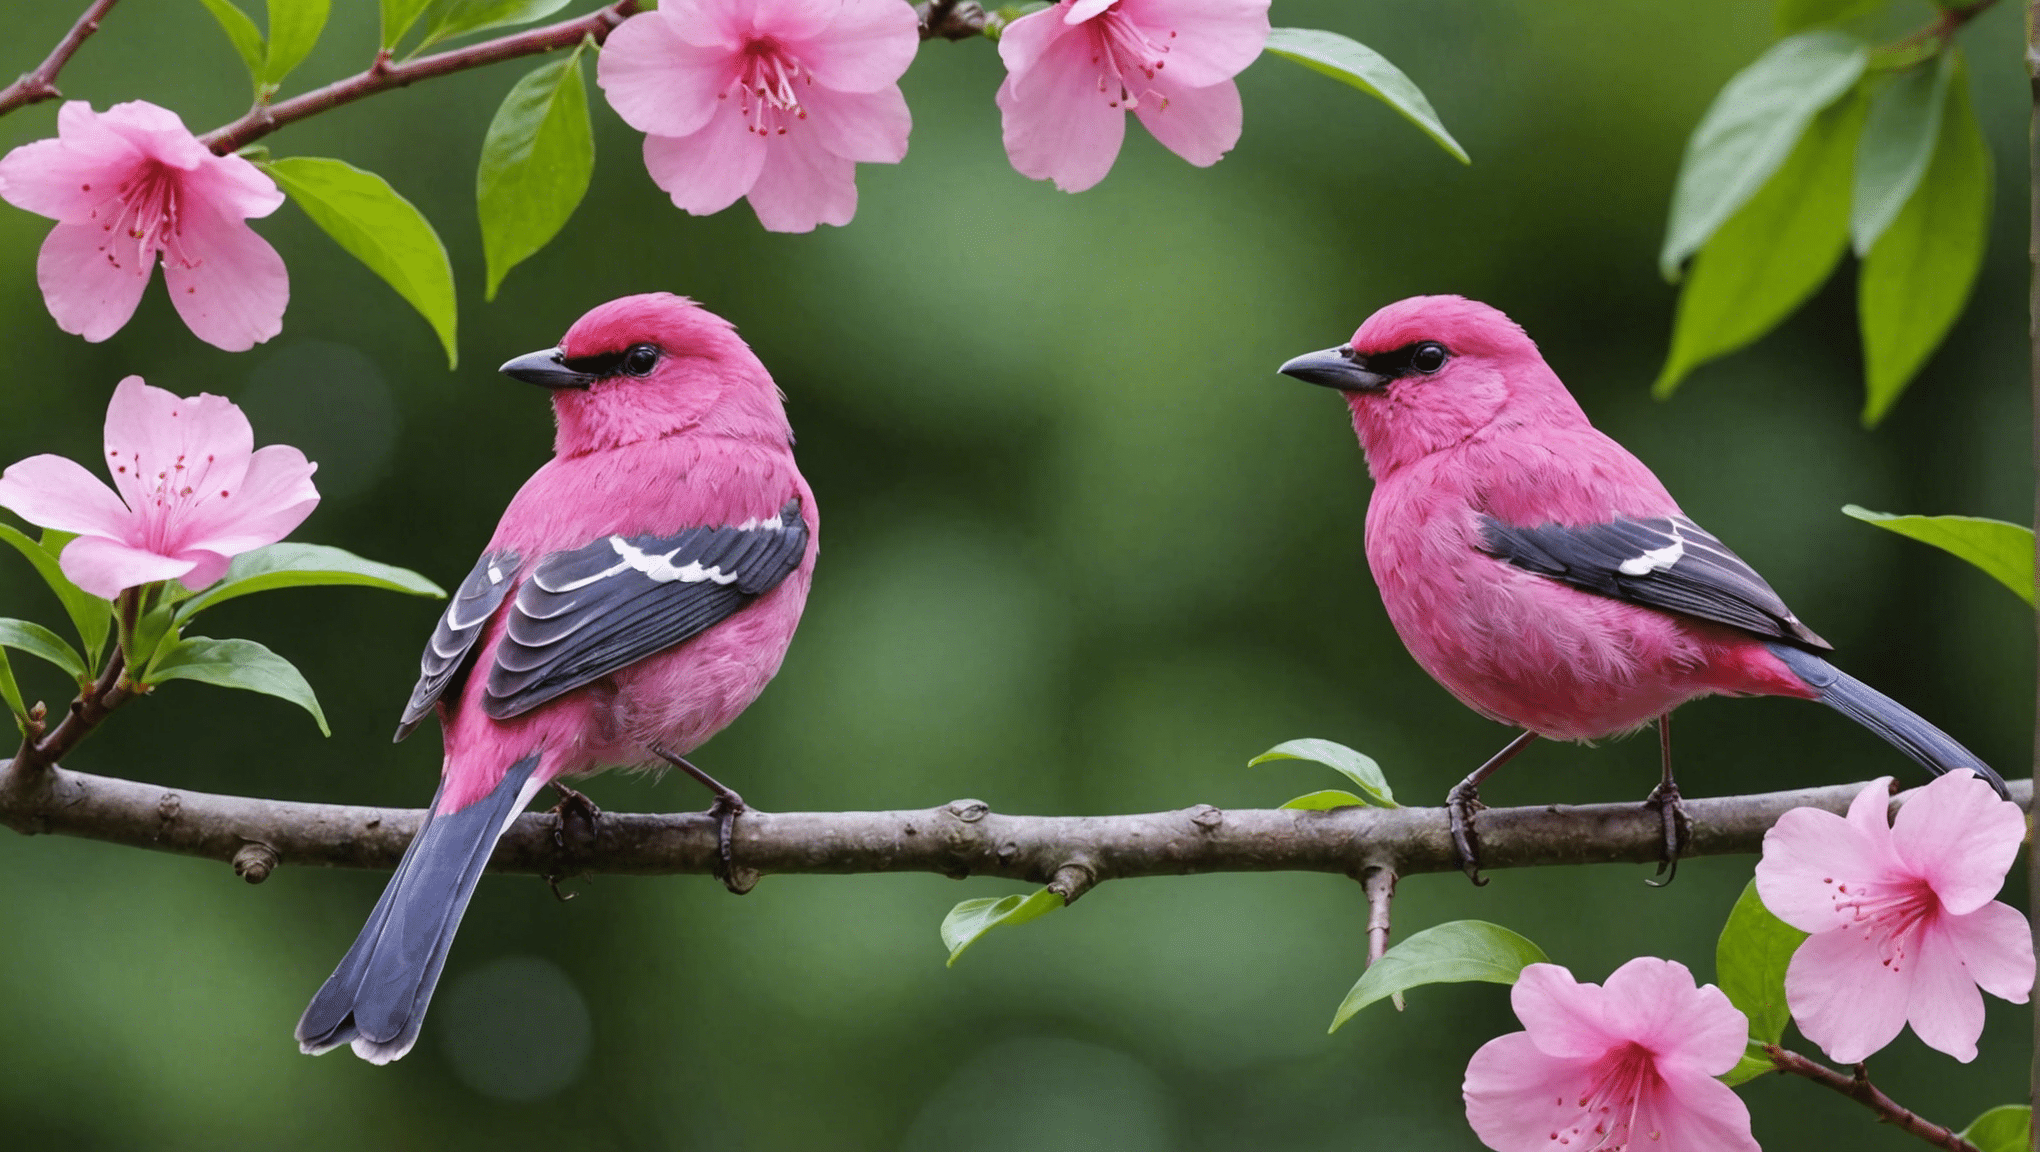 przekonaj się, czy różowe ptaki istnieją naprawdę, dzięki tej intrygującej dyskusji na temat istnienia różowych ptaków, ich cech charakterystycznych i znaczenia w świecie przyrody.